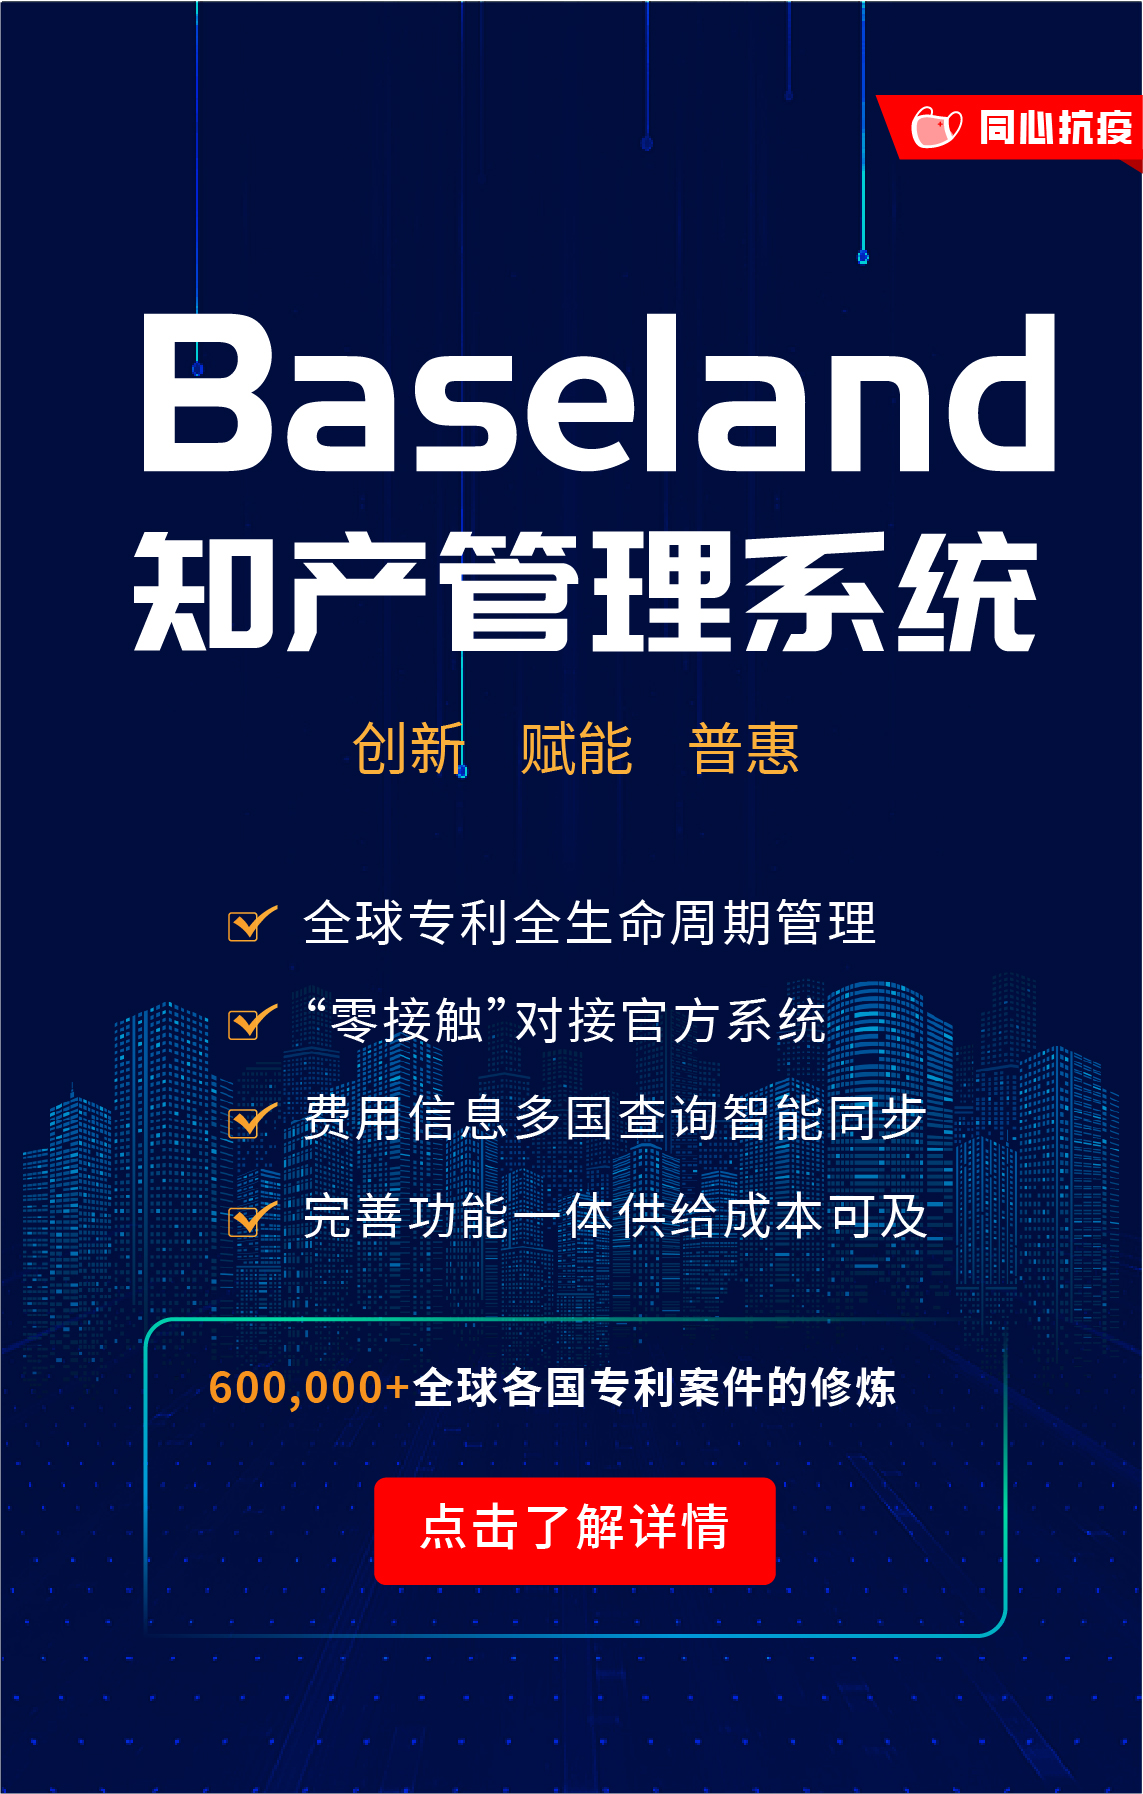 貝思蘭德(Baseland)知識產權管理系統：尋找100家代理機構免費使用2年暨同心抗疫活動